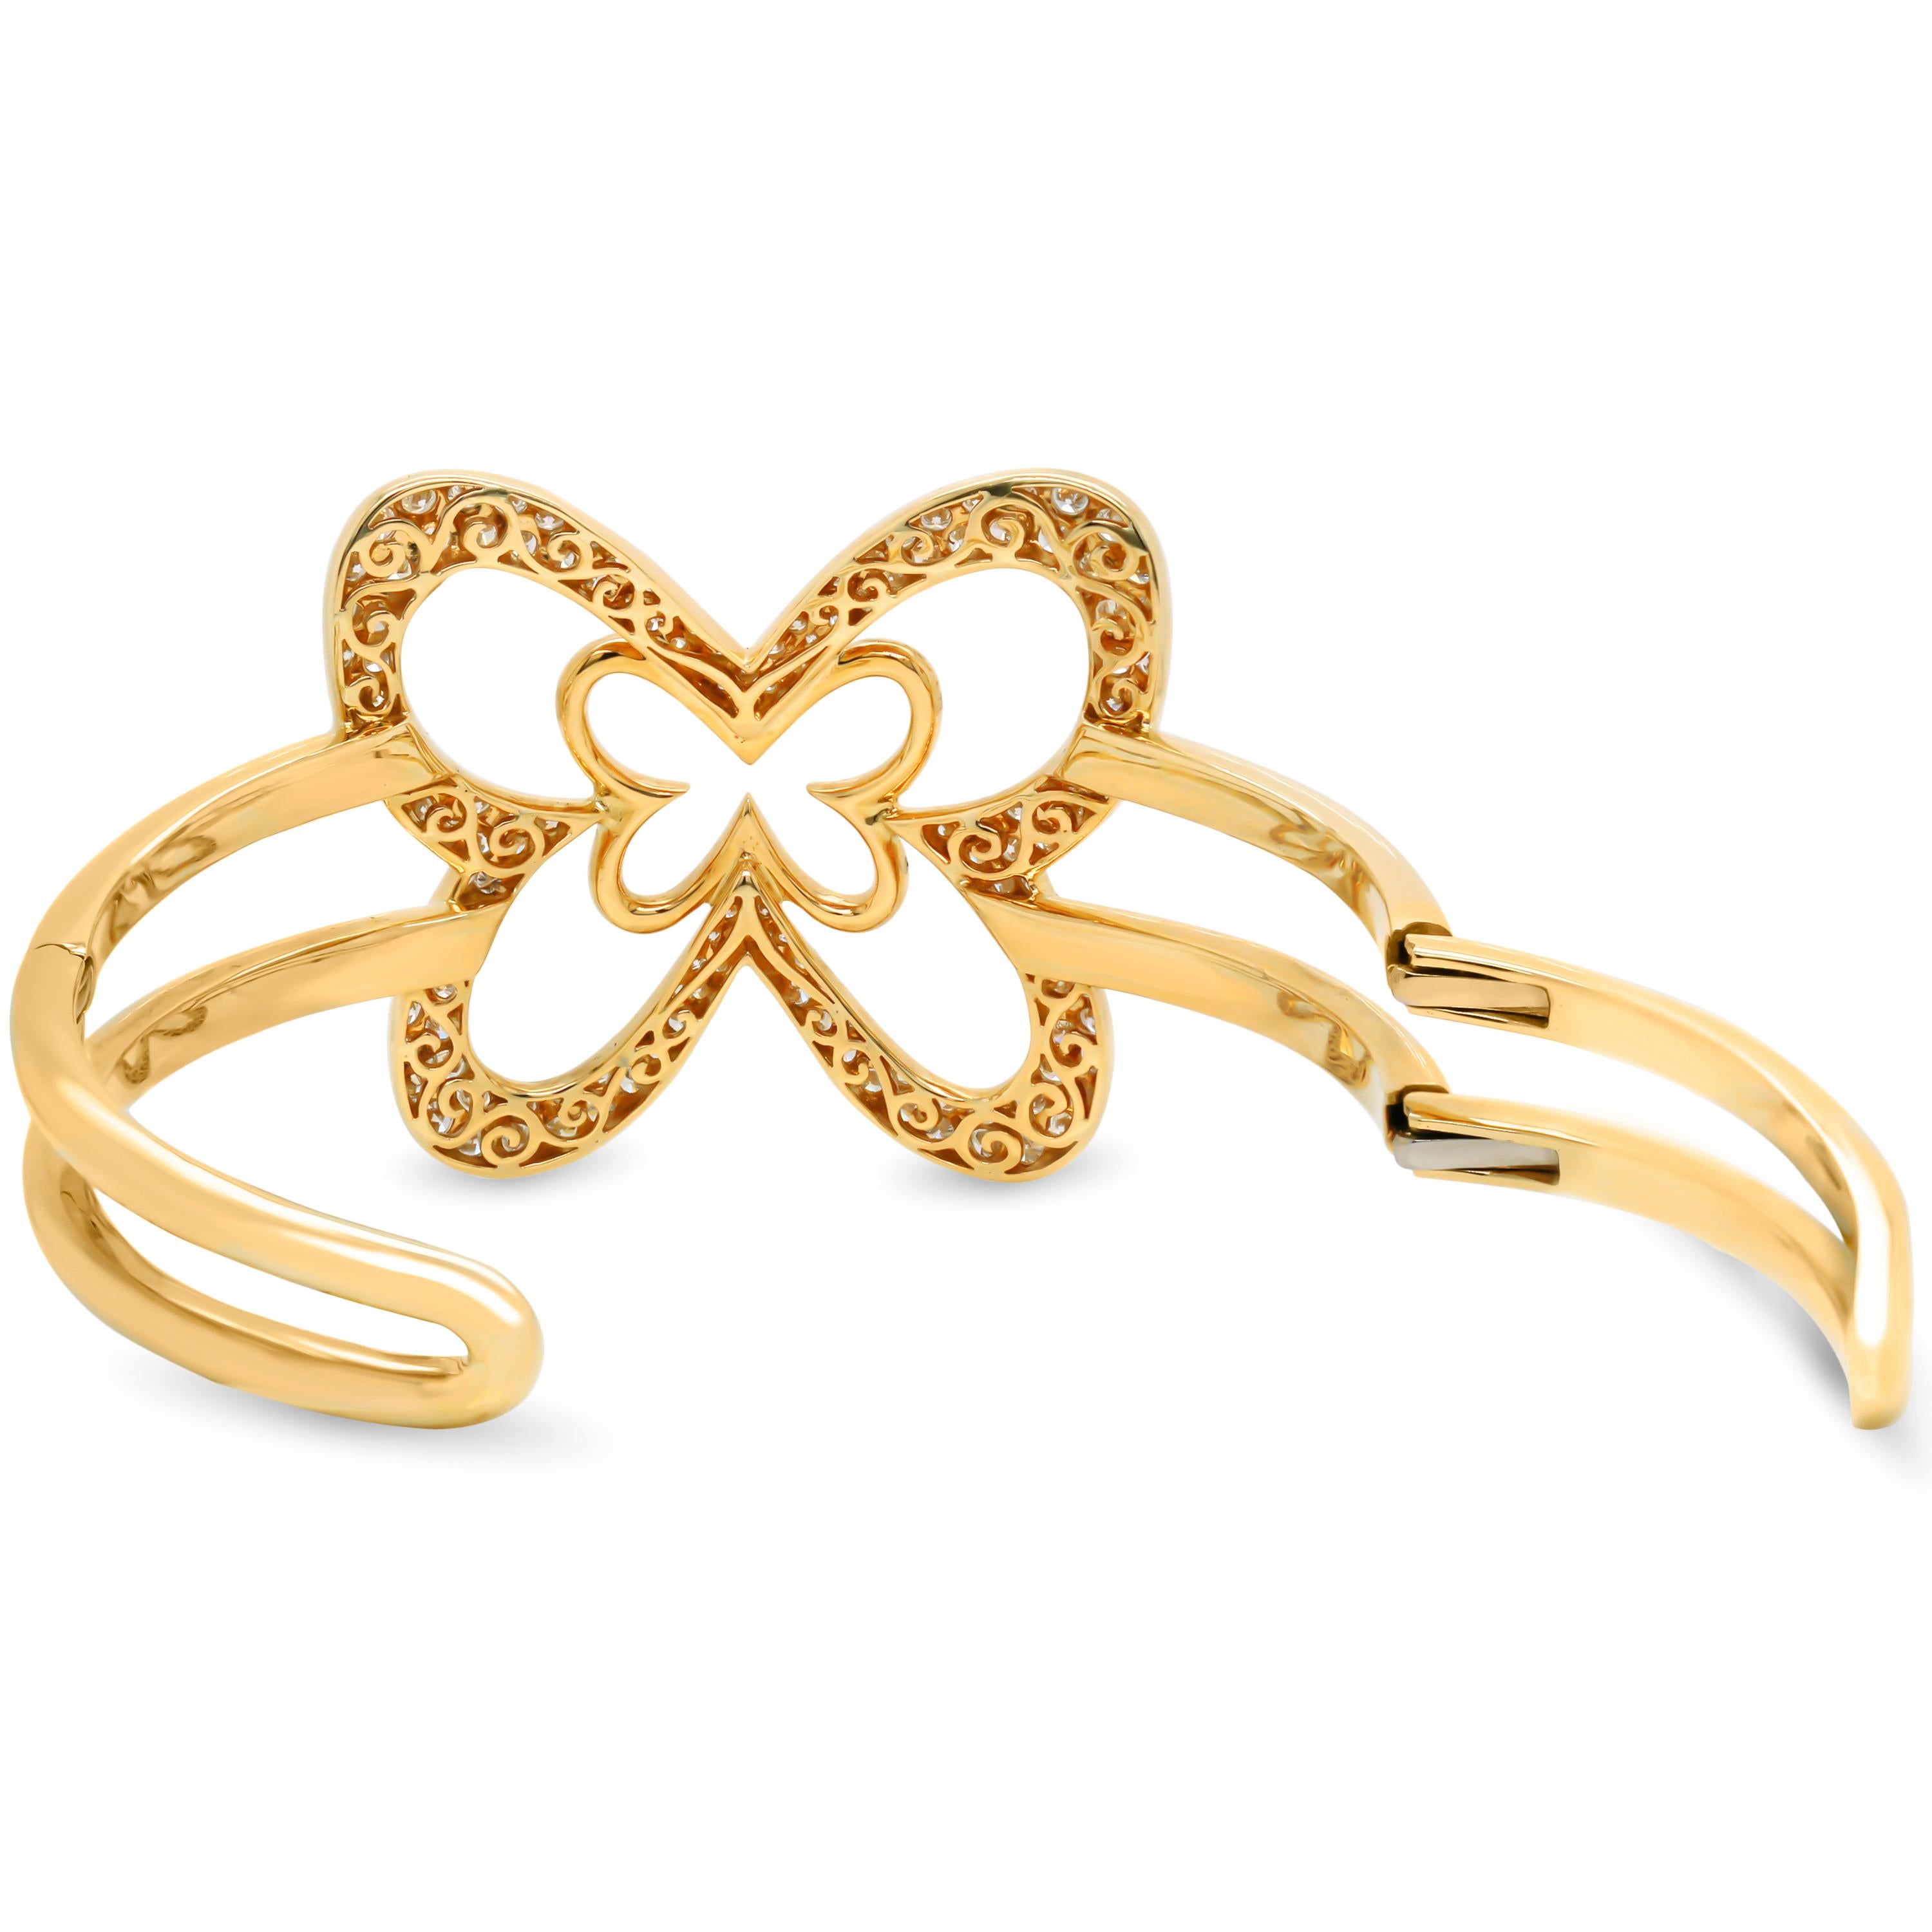 Round Cut 18 Karat Yellow Gold Diamond Large Butterfly Cuff Bangle Bracelet